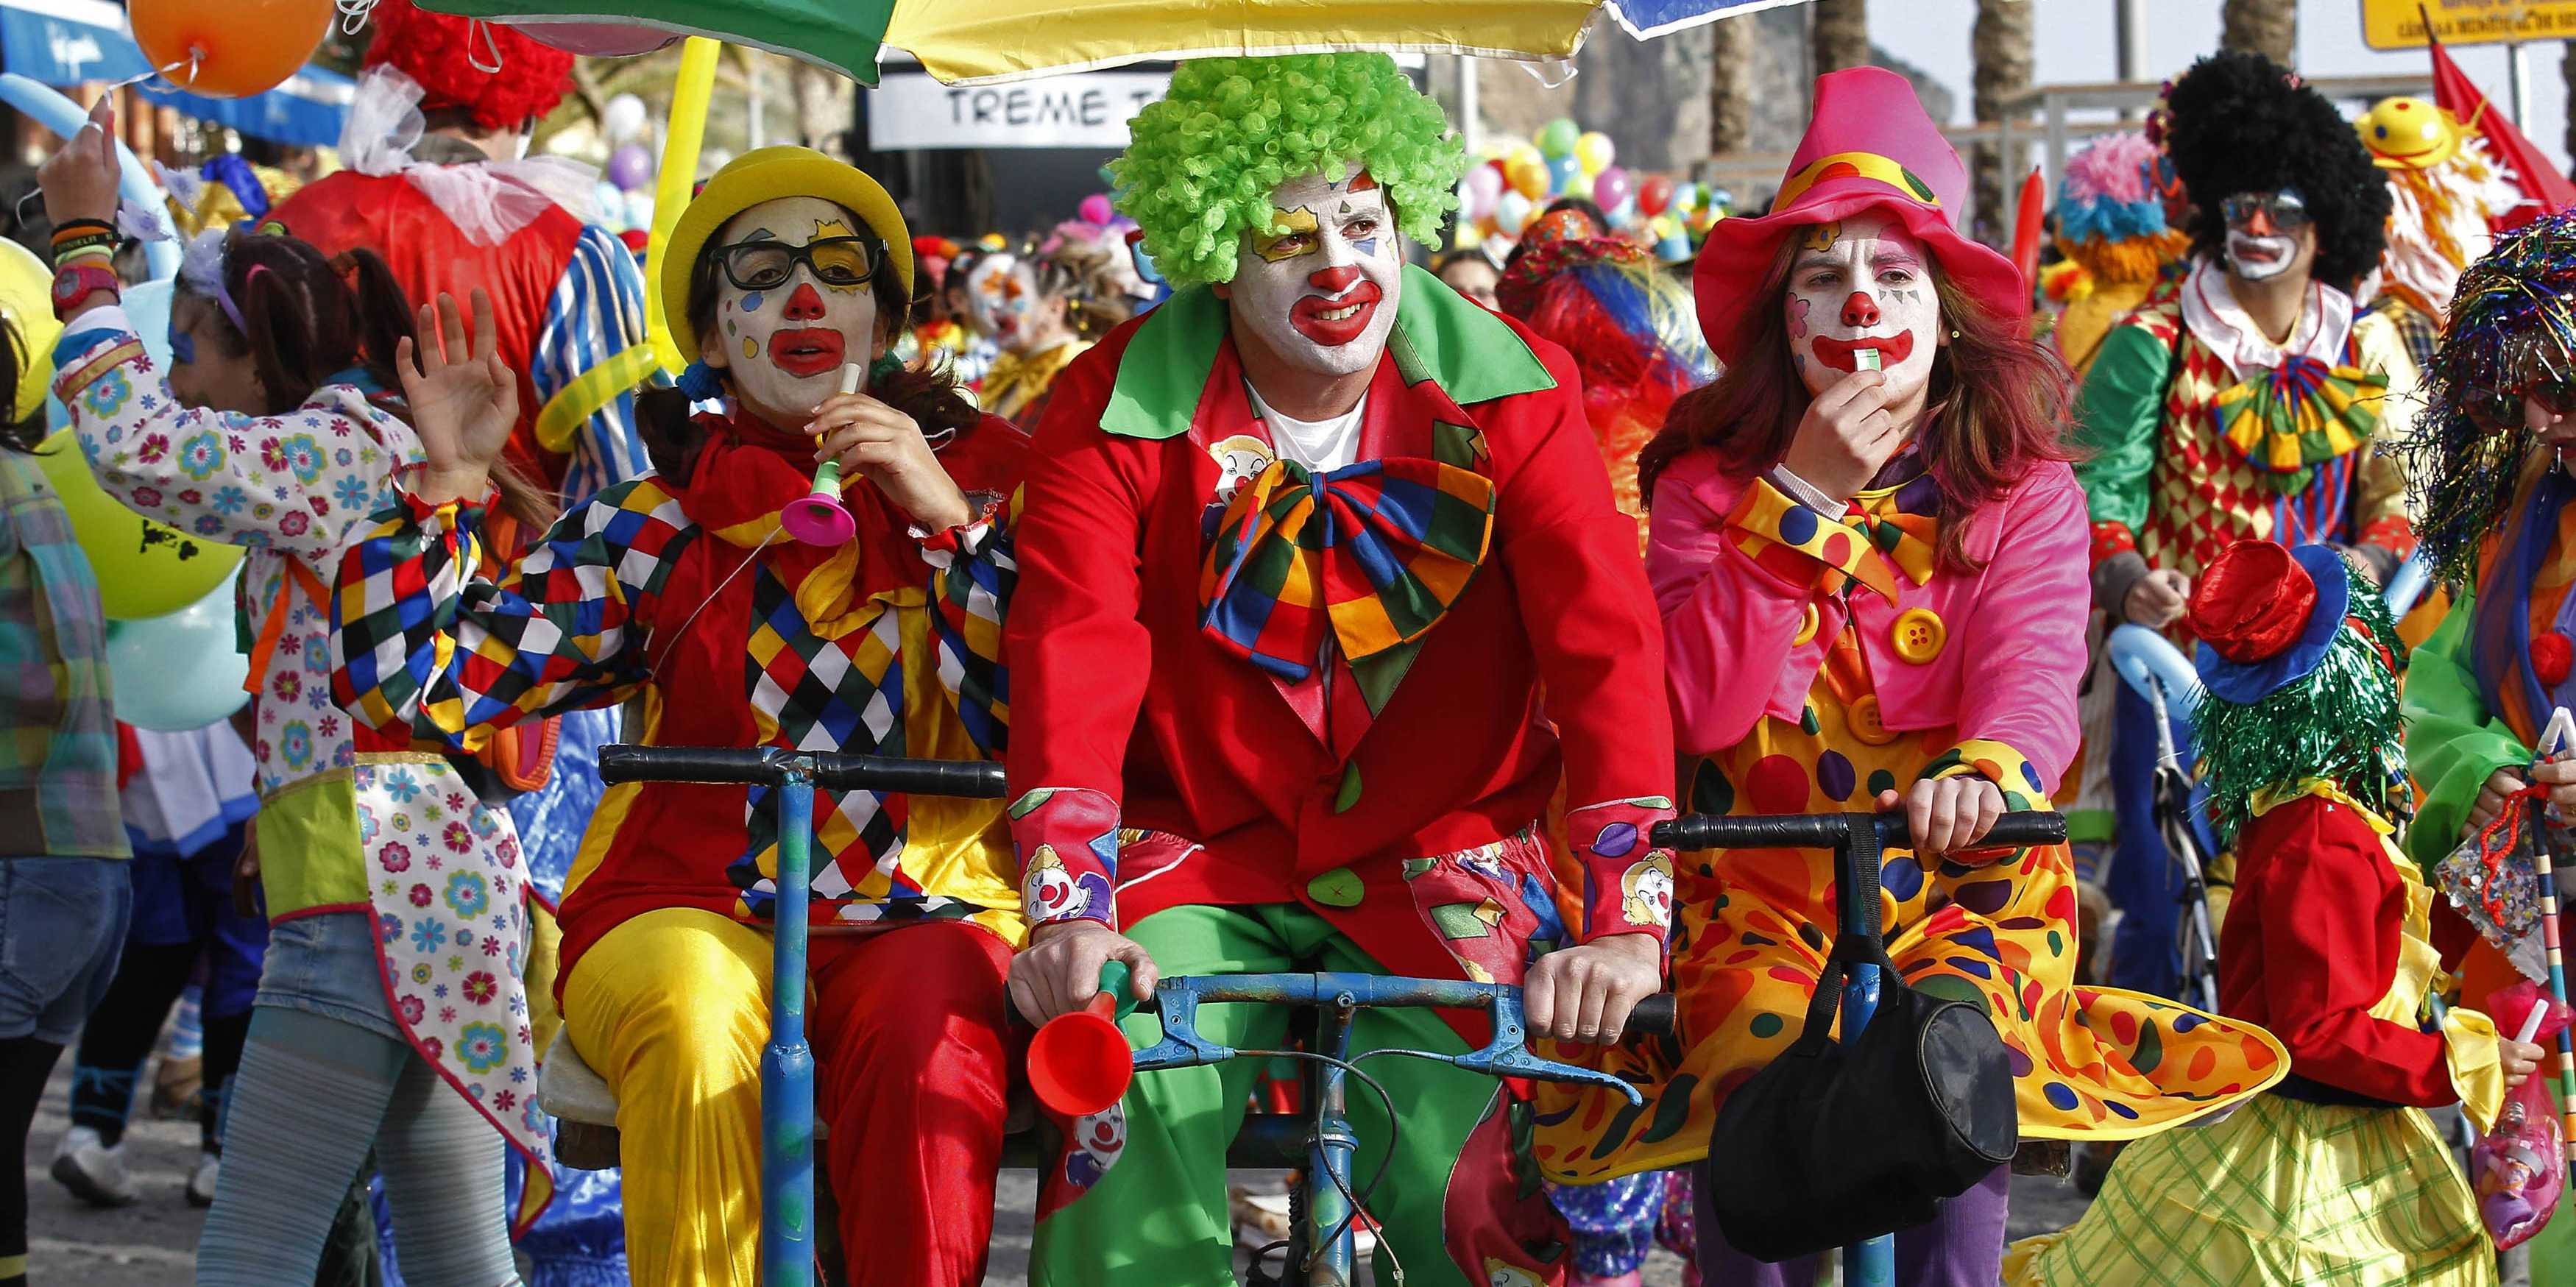 Реалии клоунов, работающих на детских праздниках